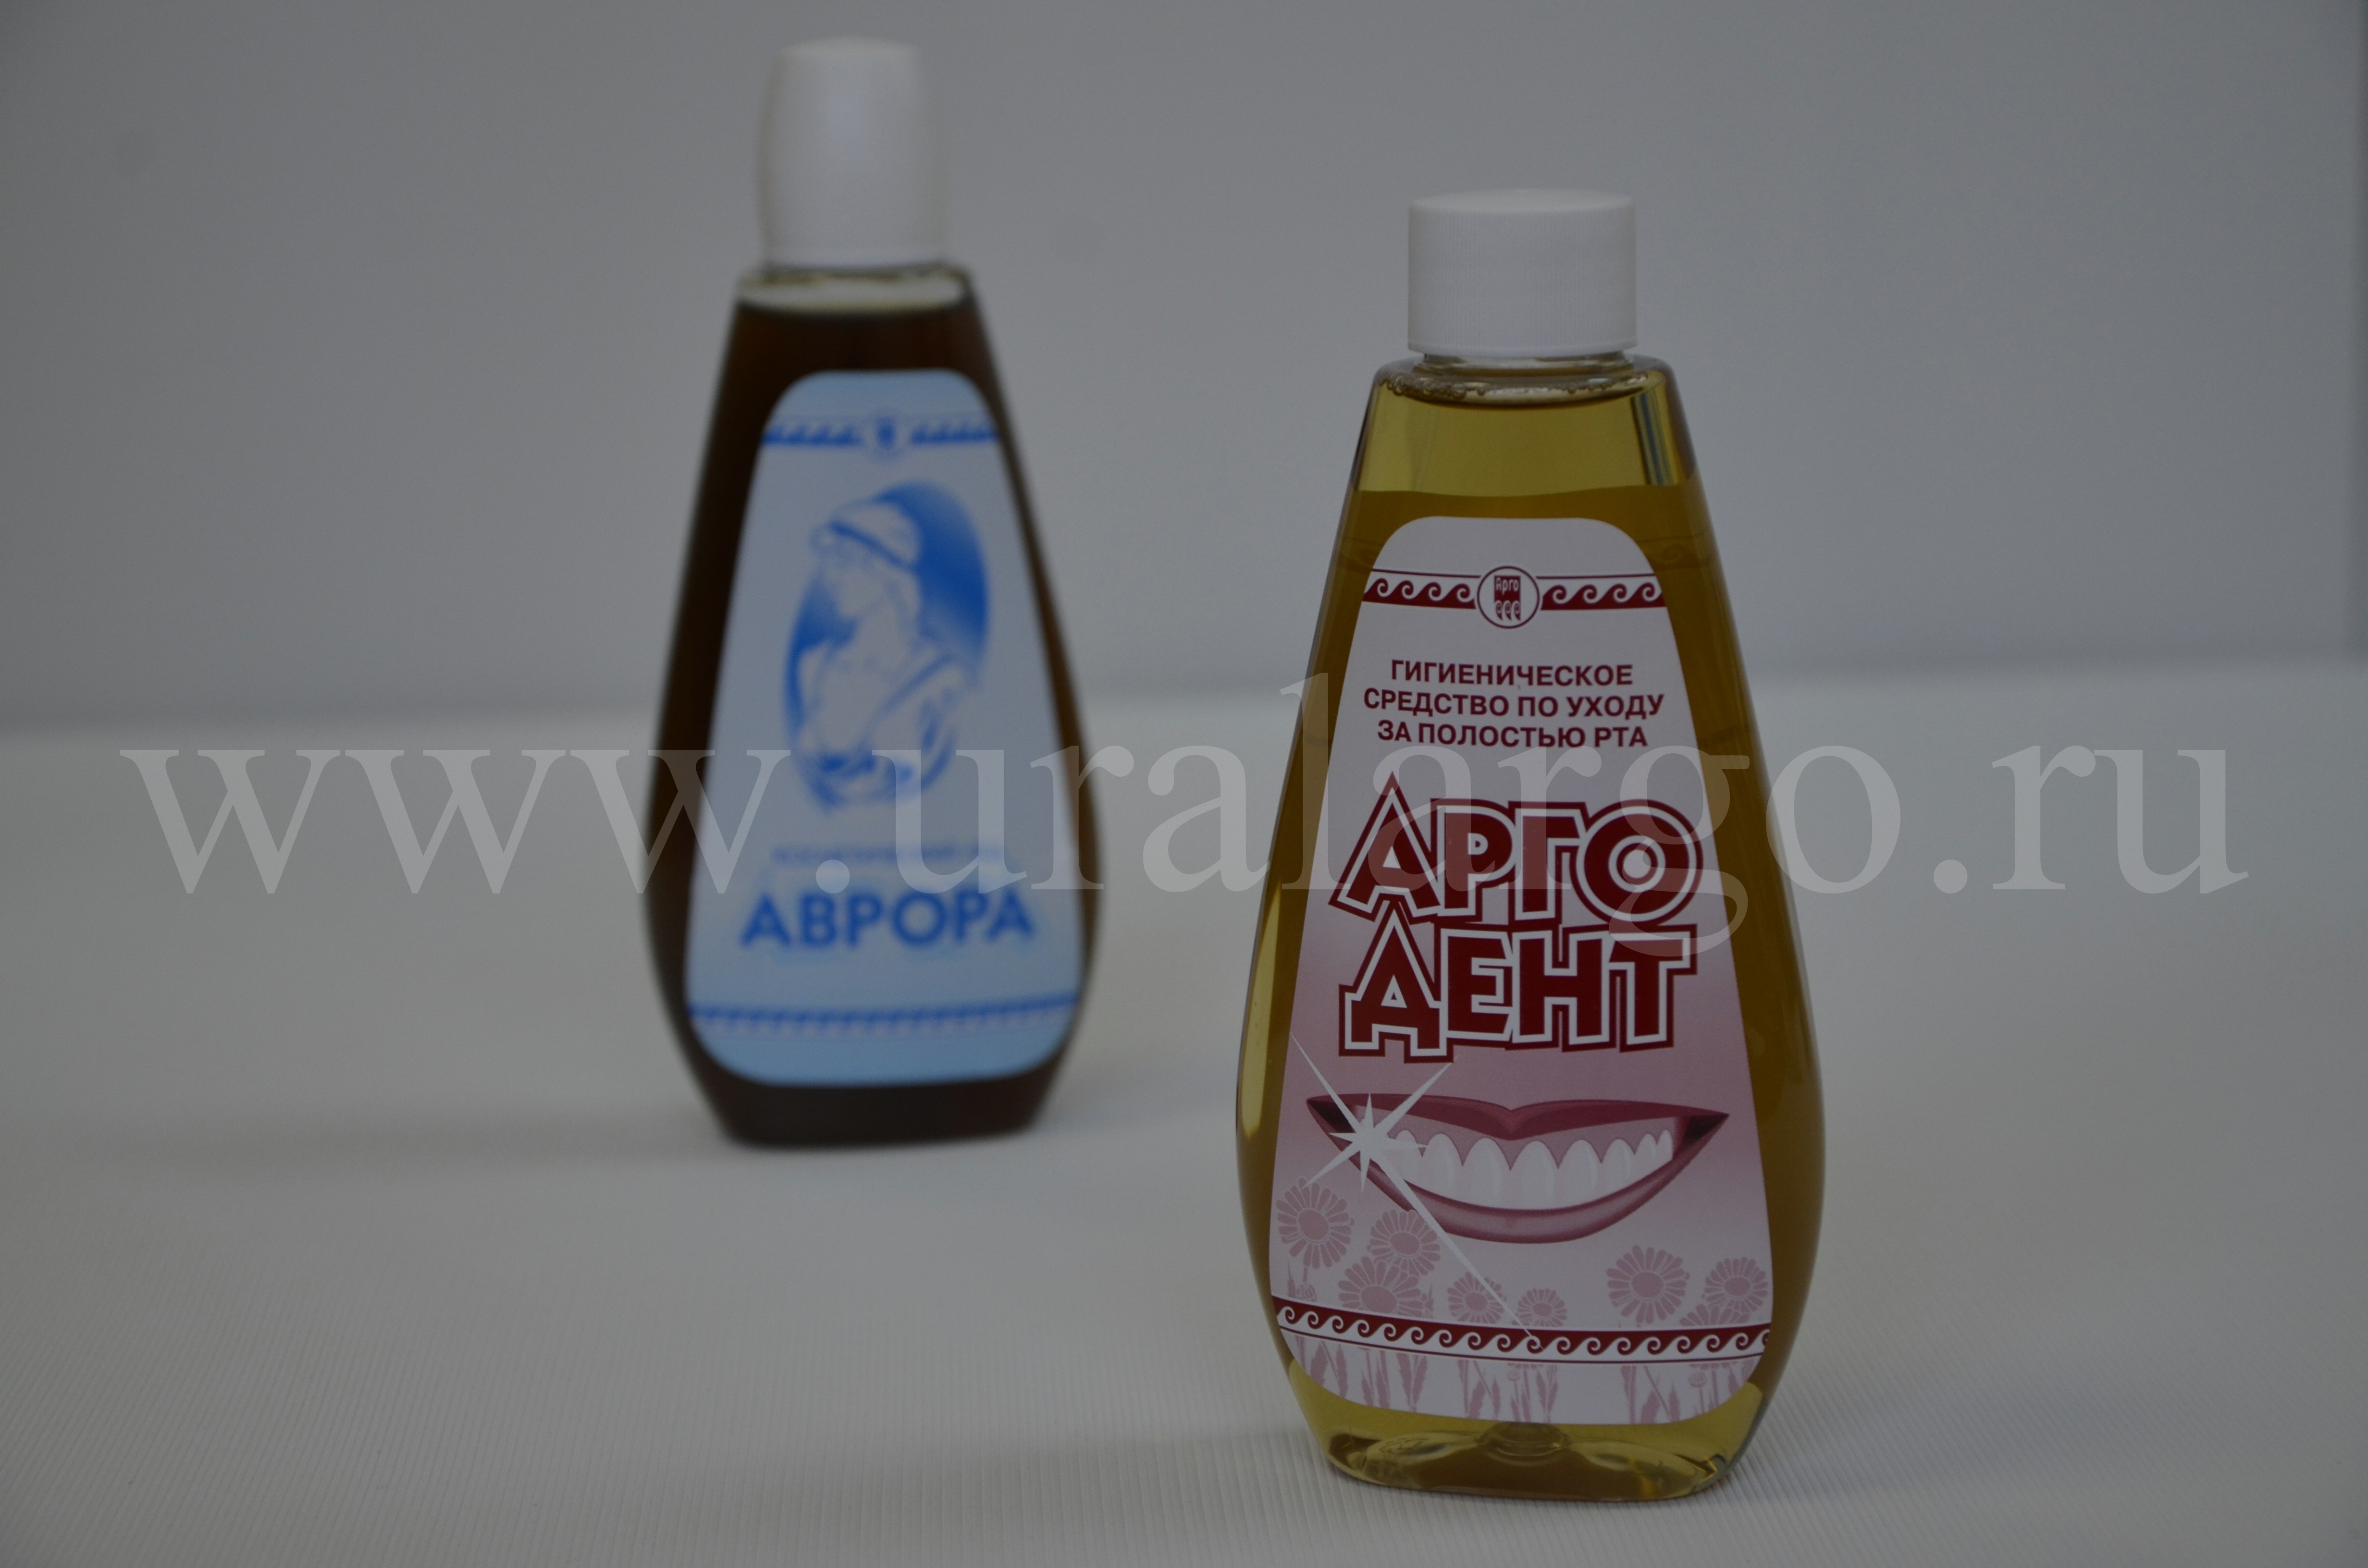 Арго-дент купить Арго Екатеринбург